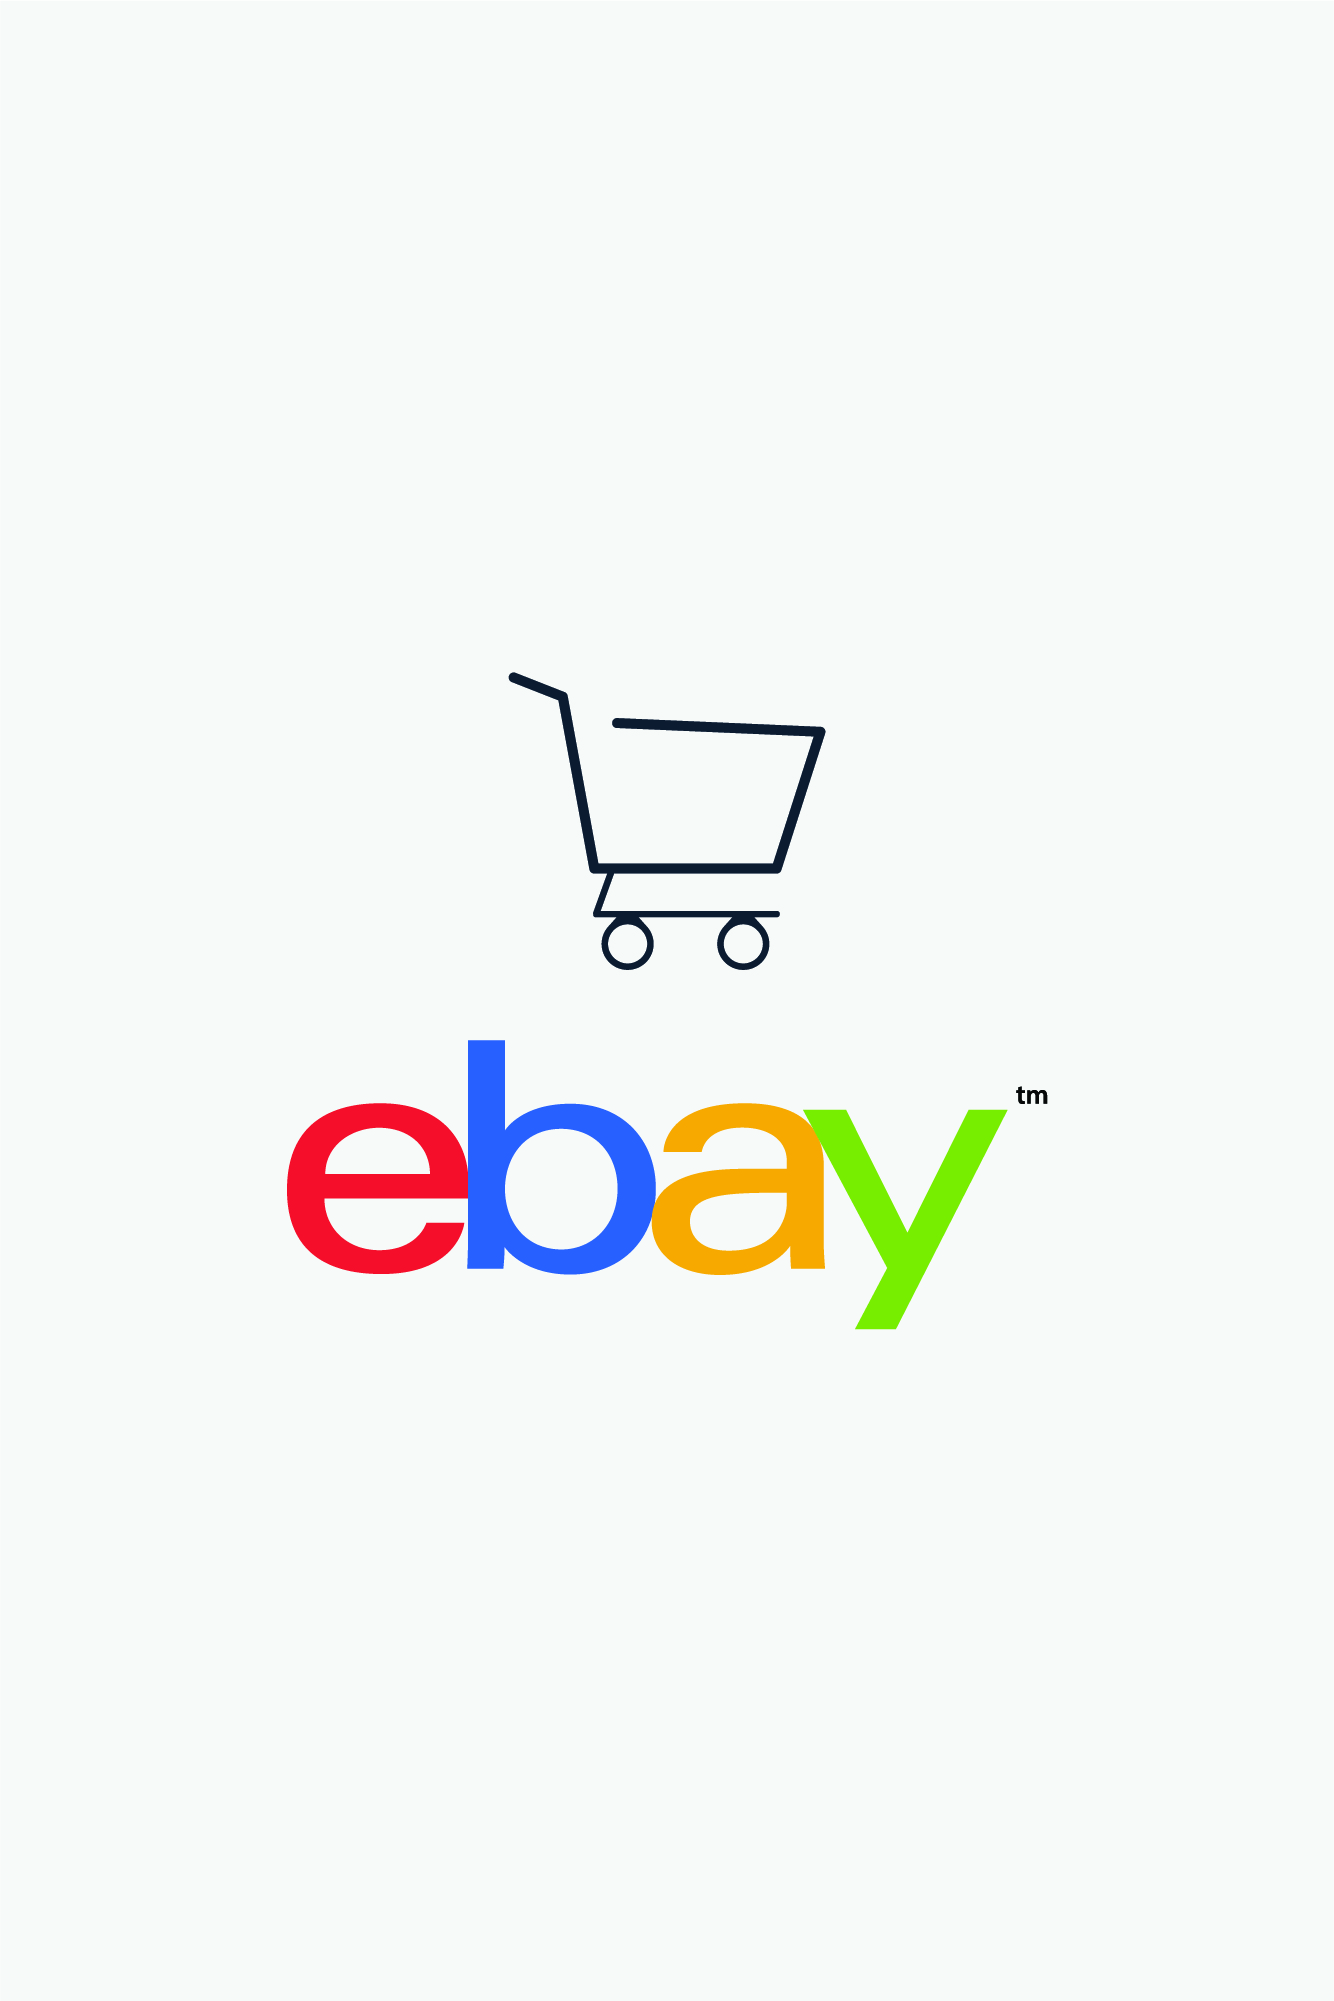 come fare marketing su Ebay